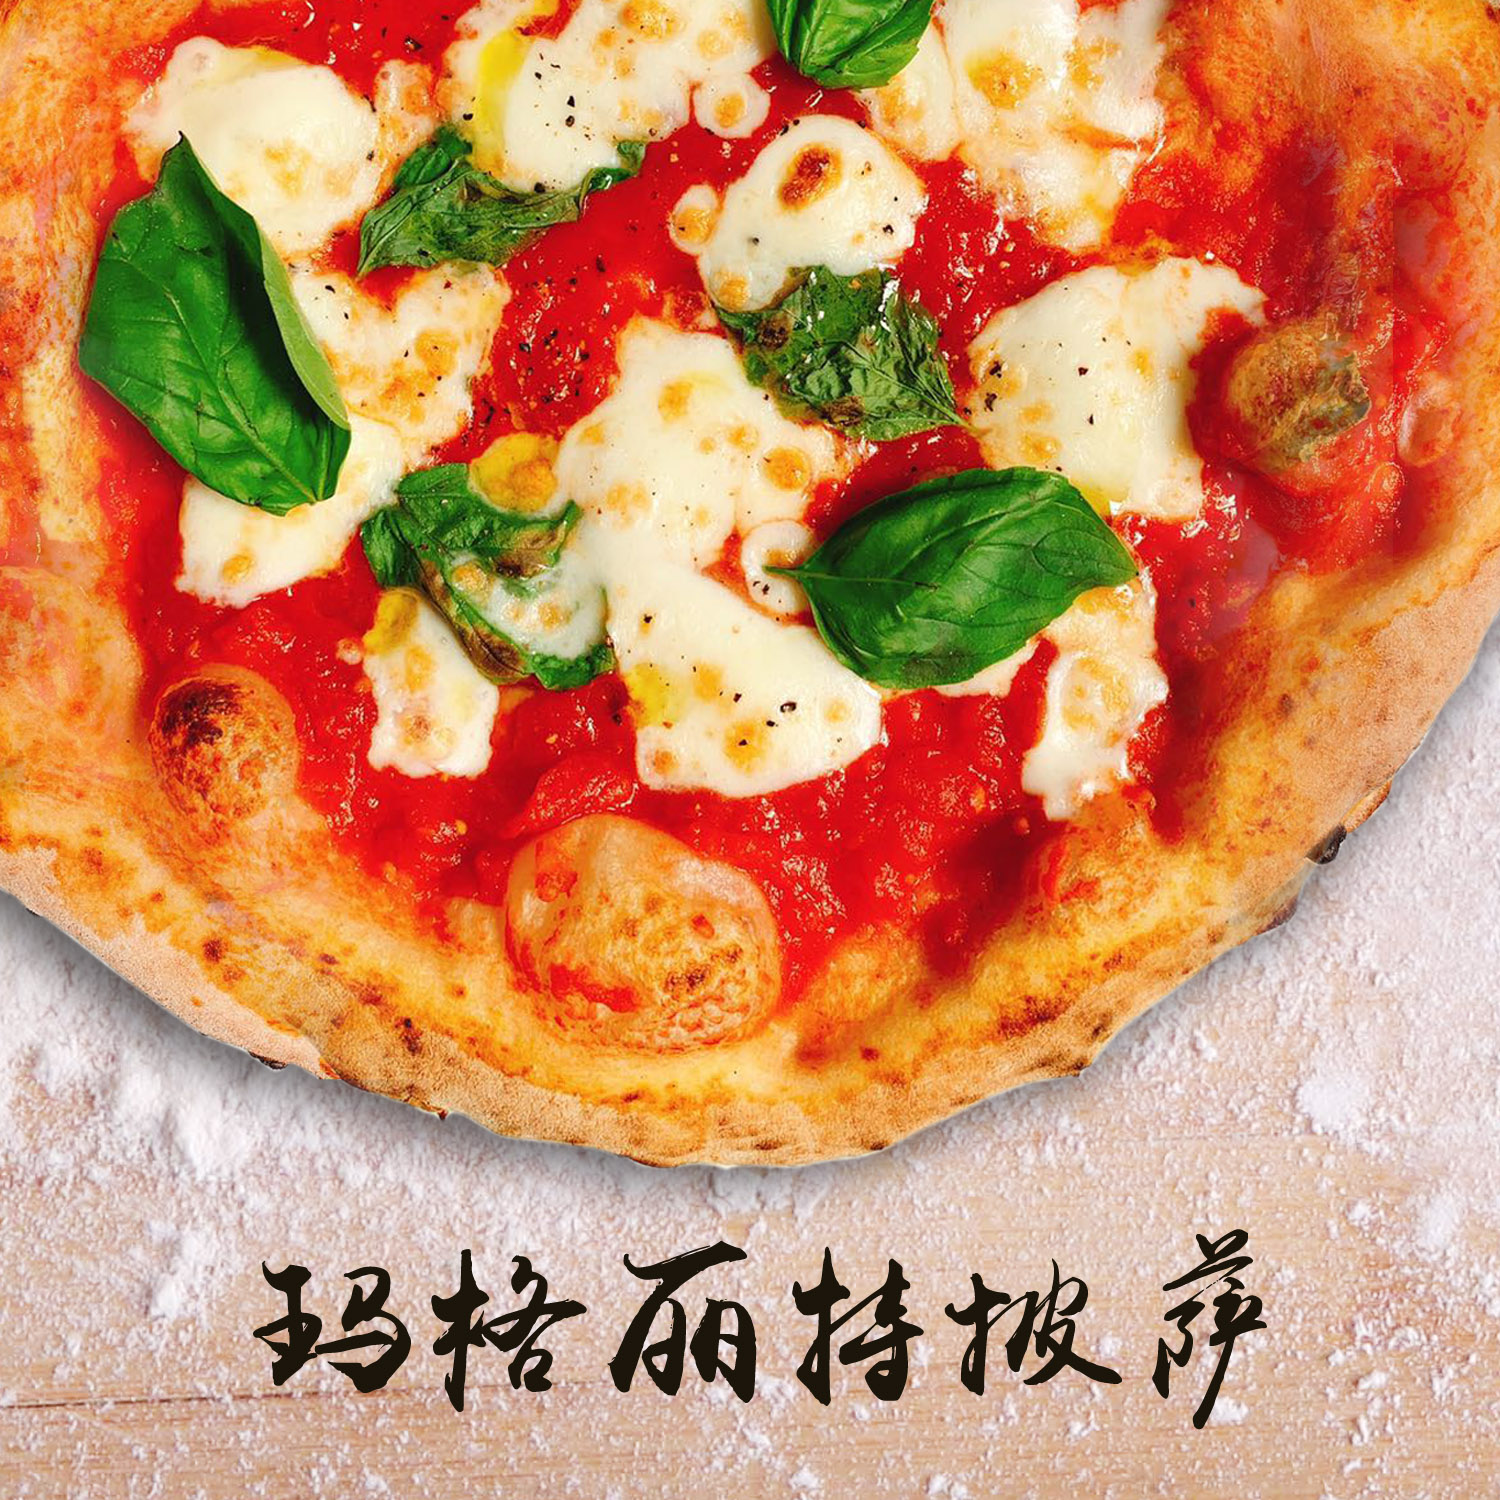 意大利玛格丽特披萨3件套装 番茄酱 马苏里拉奶酪 那不勒斯面团